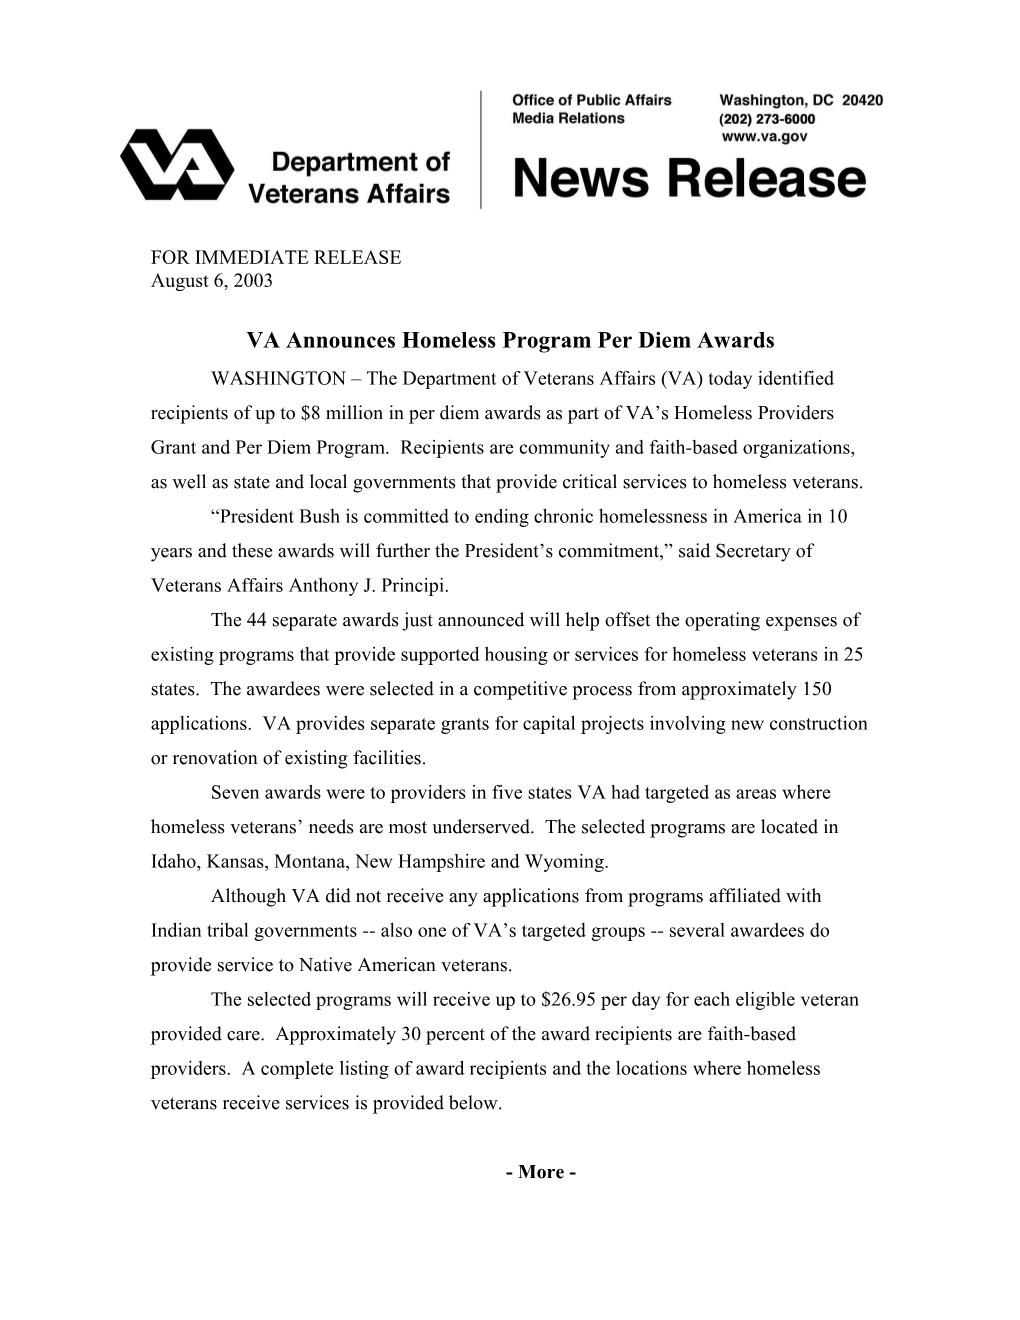 VA Announces Homeless Program Per Diem Awards